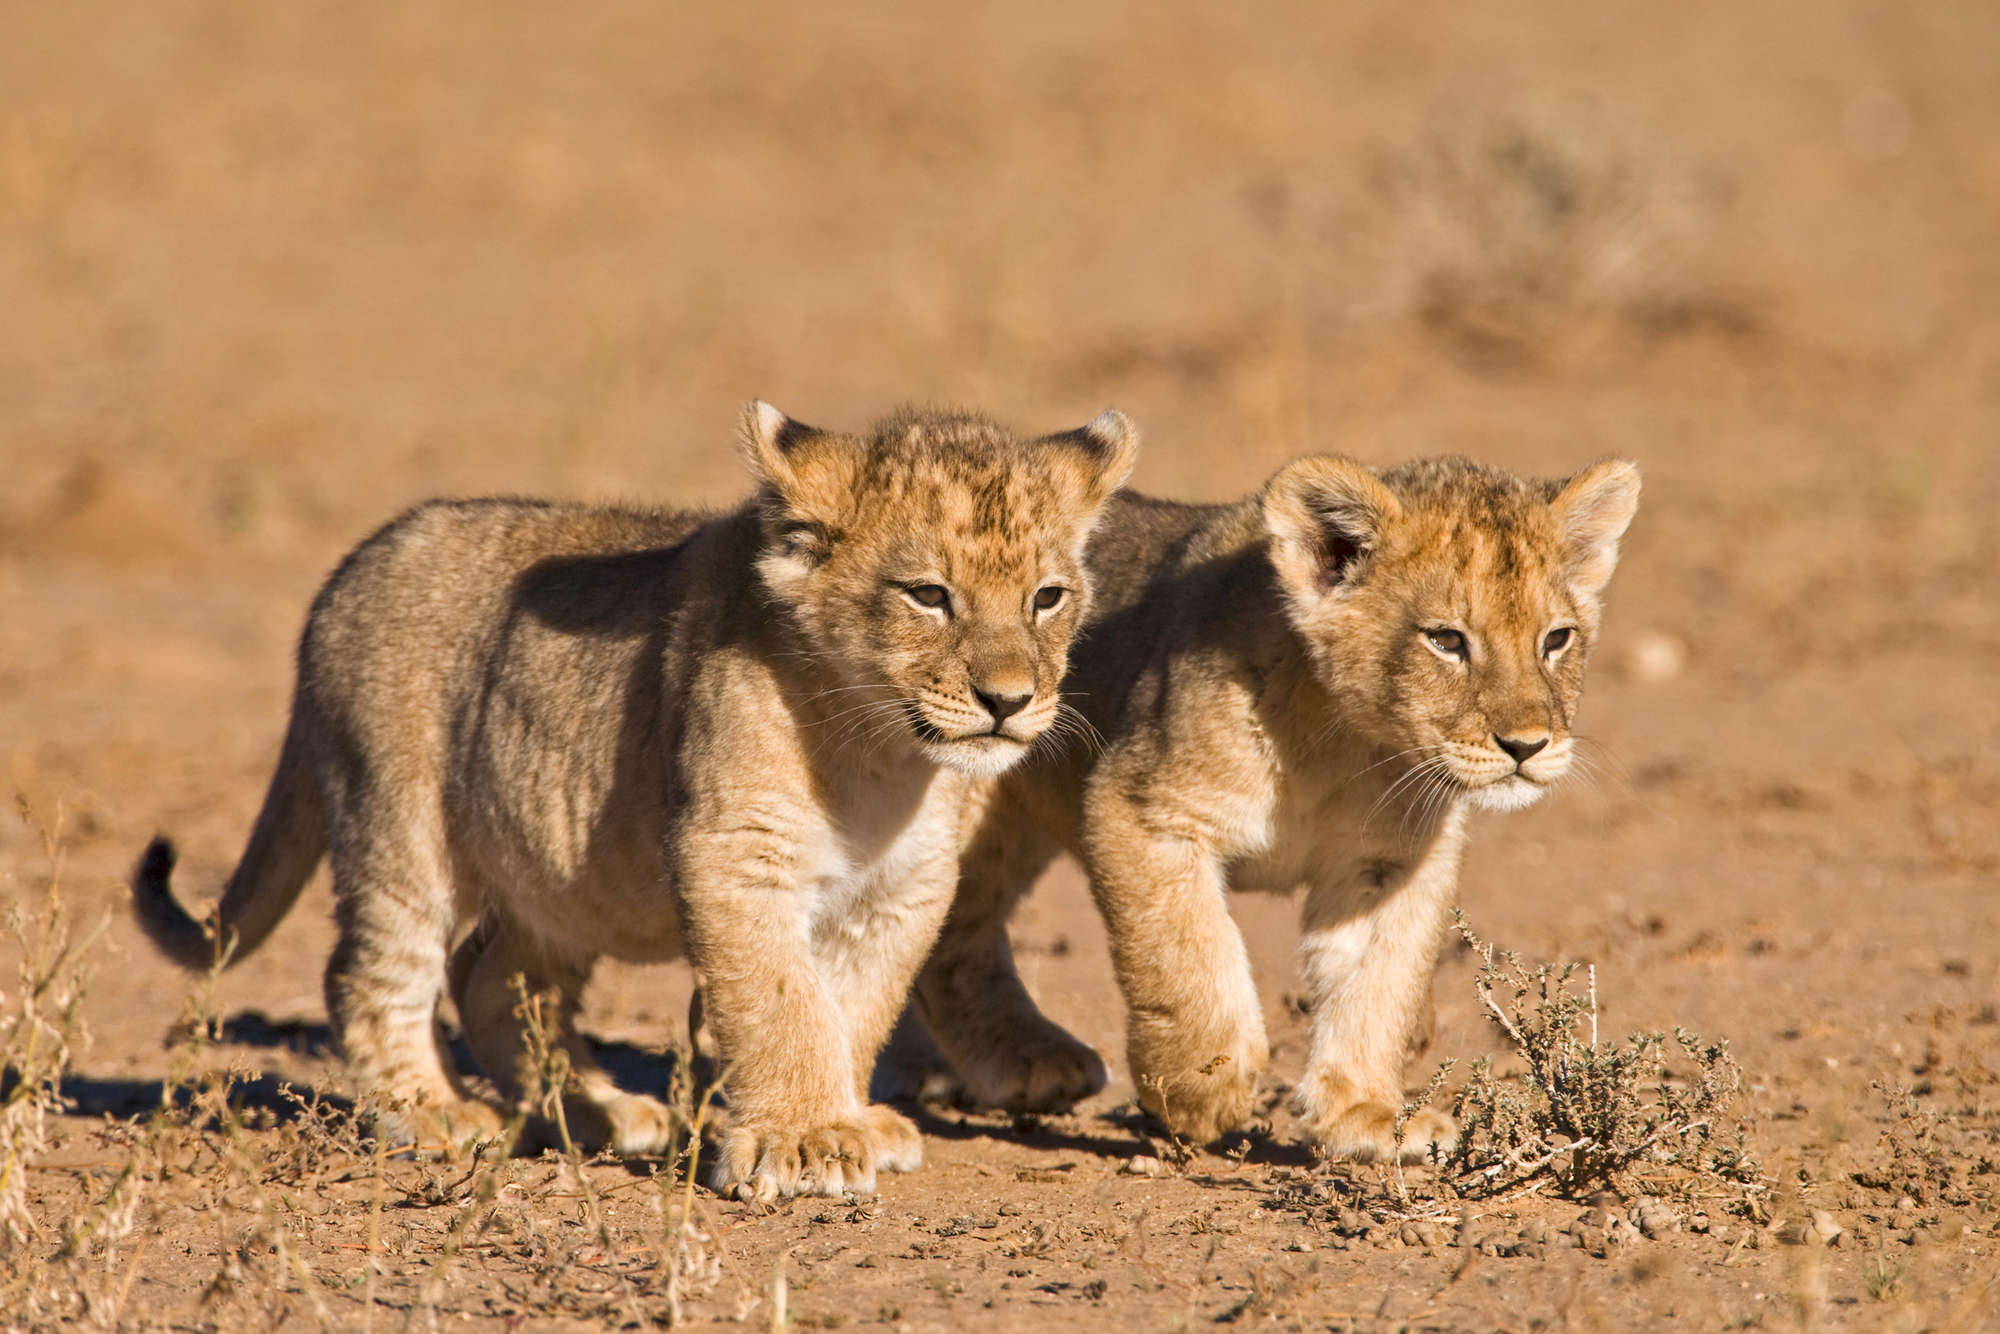             Löwen Fototapete mit zwei Jungen in Freiheit auf Premium Glattvlies
        